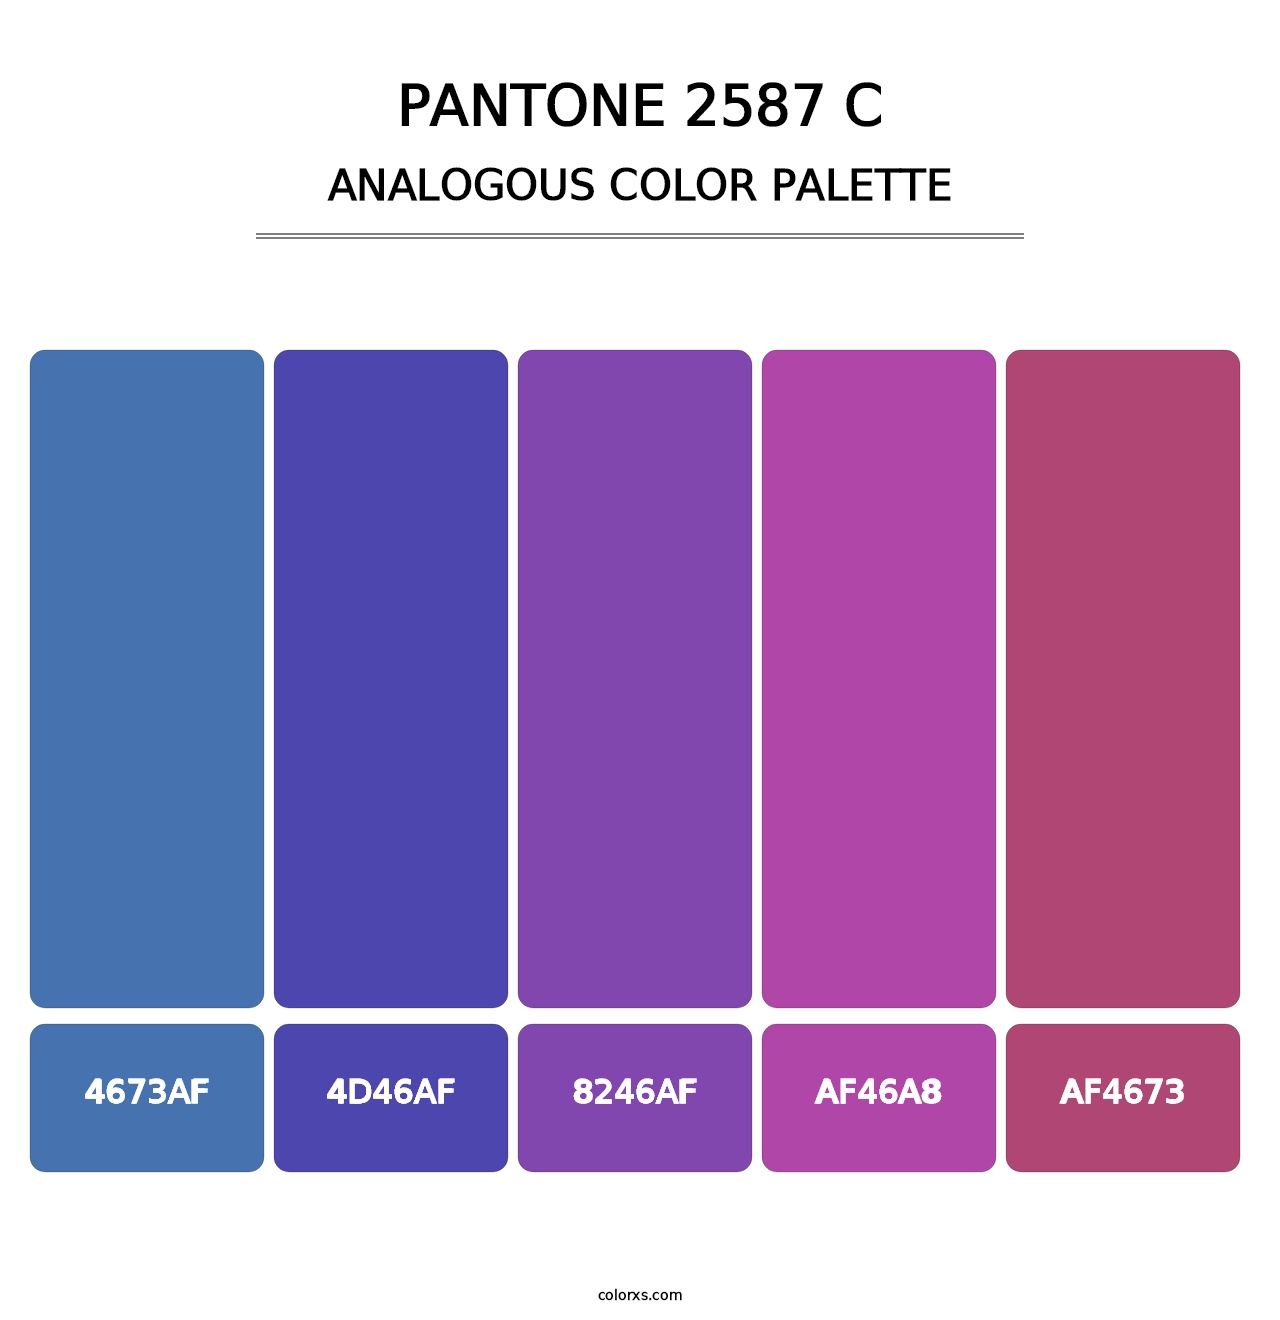 PANTONE 2587 C - Analogous Color Palette